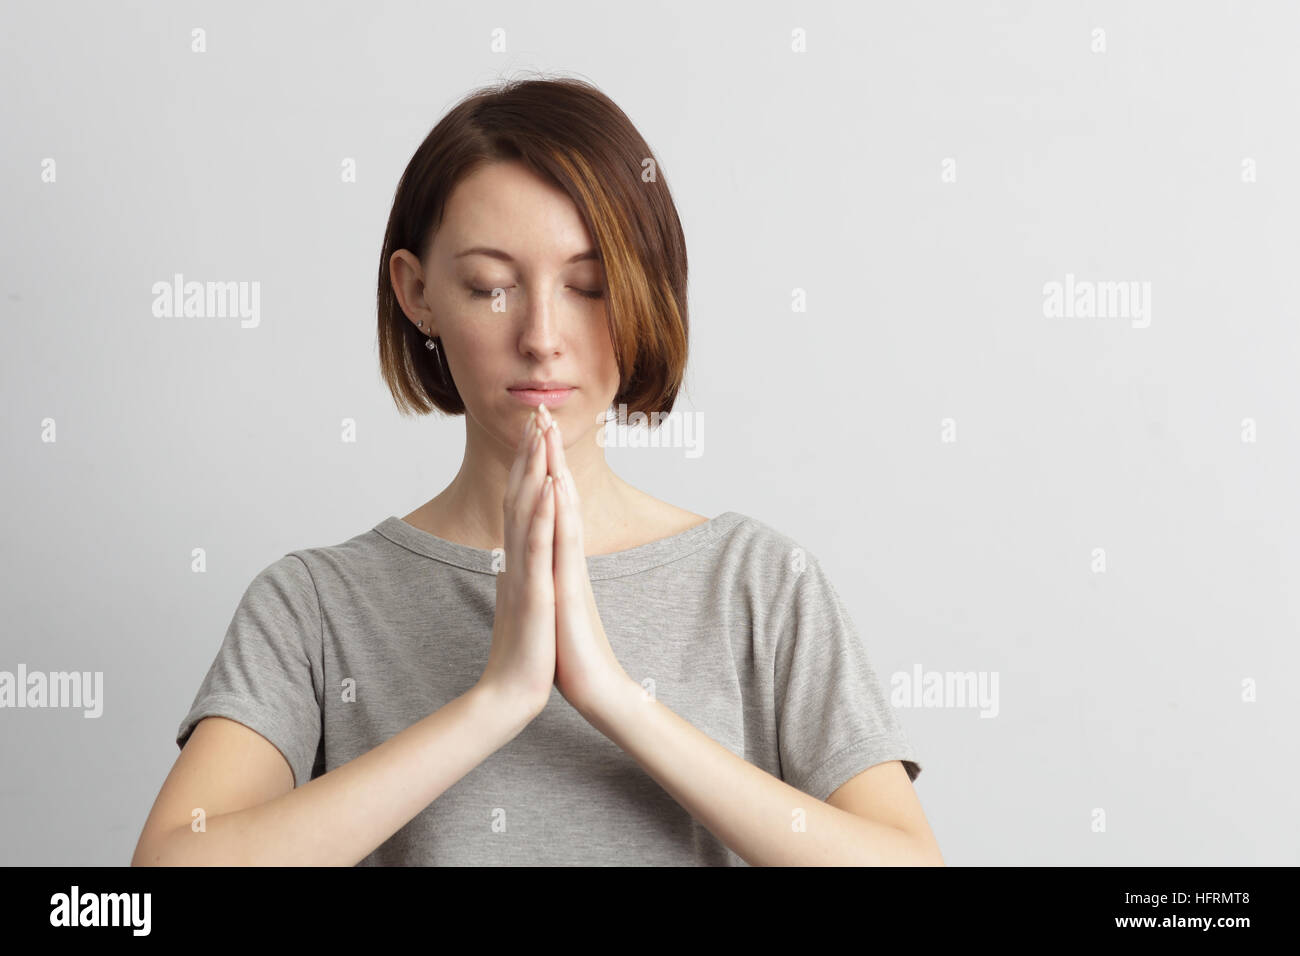 Meditare o fare un desiderio, cercando di mantenere la calma. Foto Stock